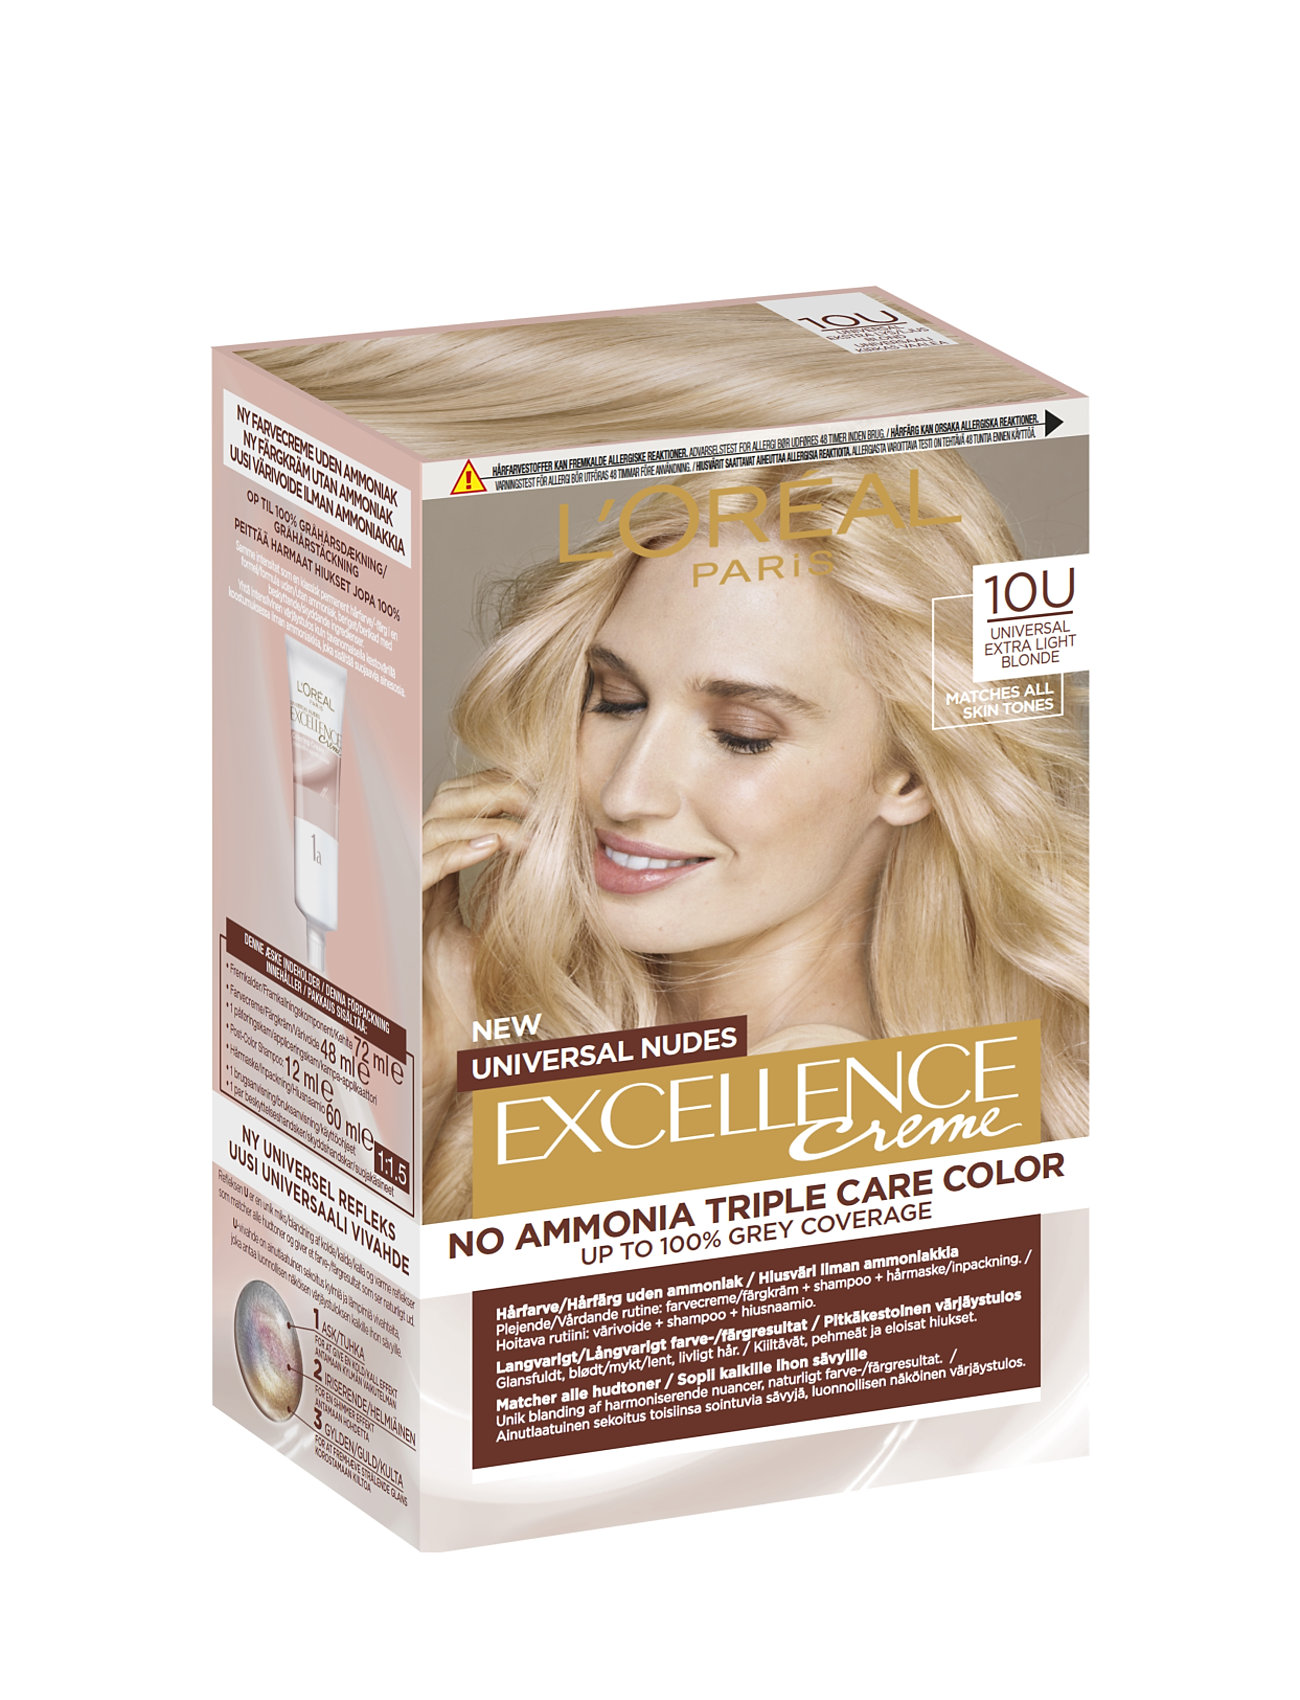 L'oréal Paris Excellence Universal Nudes 10U Universal Lightest Blonde Beauty Women Hair Care Color Treatments Nude L'Oréal Paris